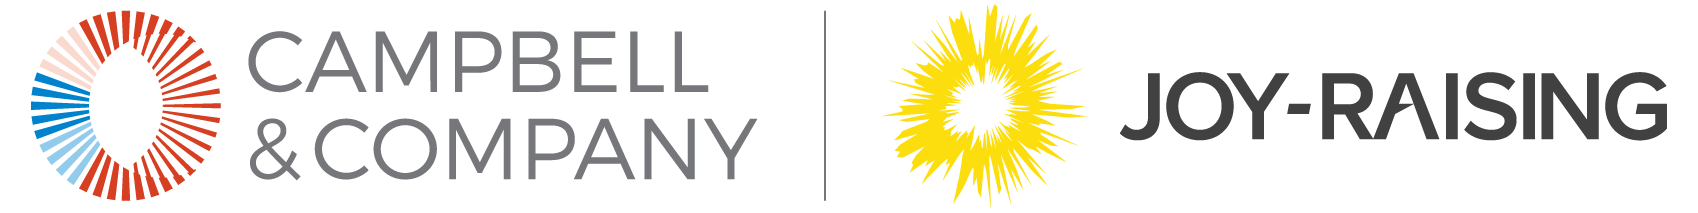 Campbell & Company's and Joy-Raising LLC's Logo